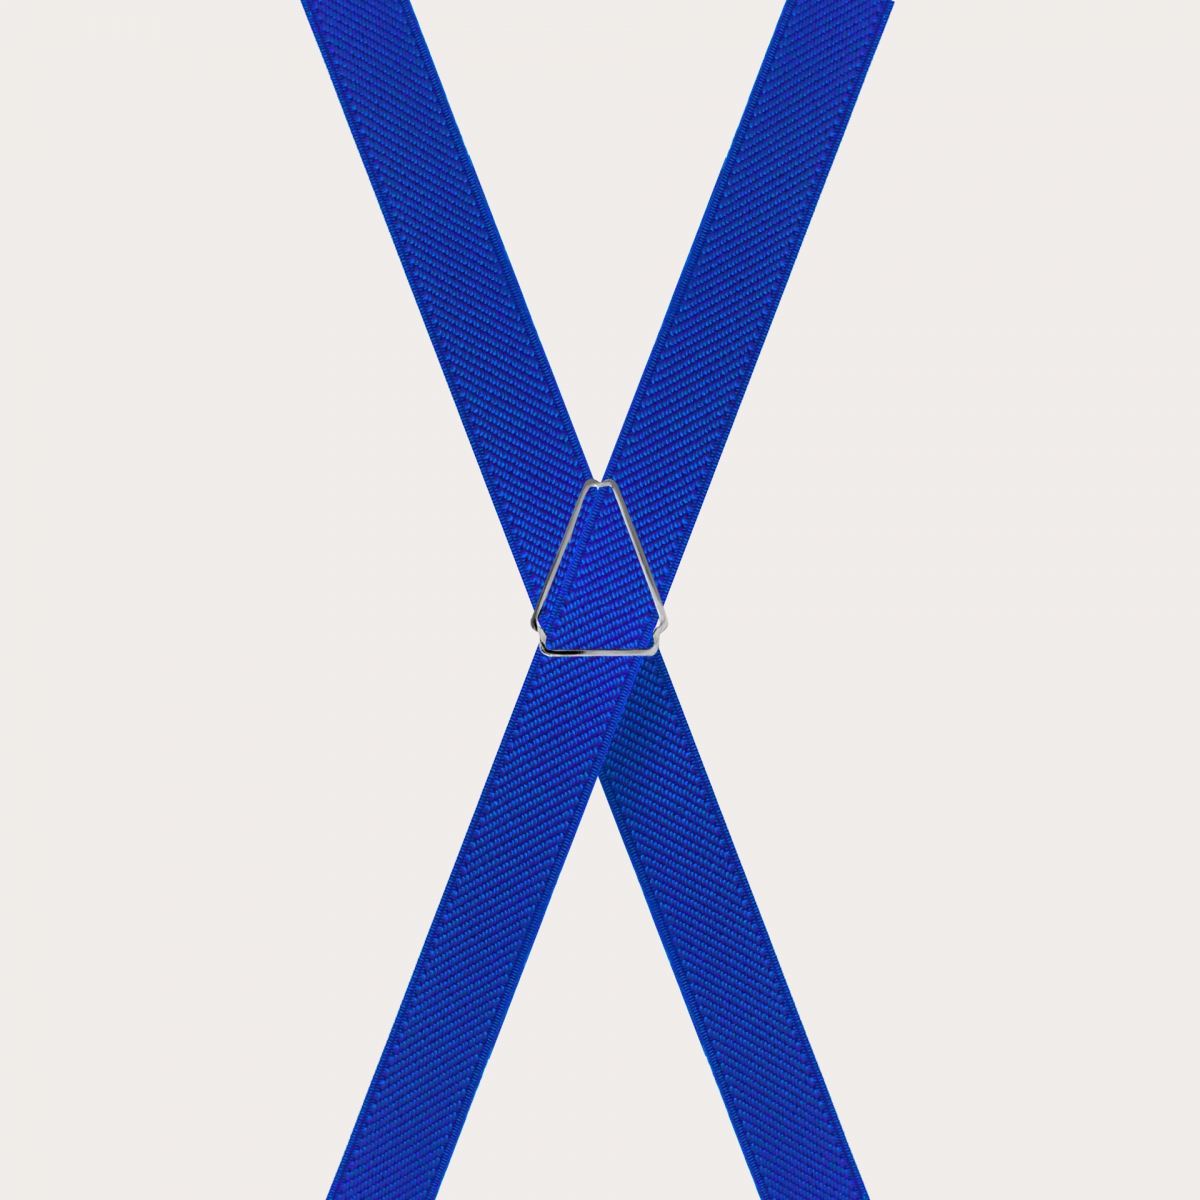 BRUCLE Tirantes unisex en forma de X para niños y adolescentes, azul royal